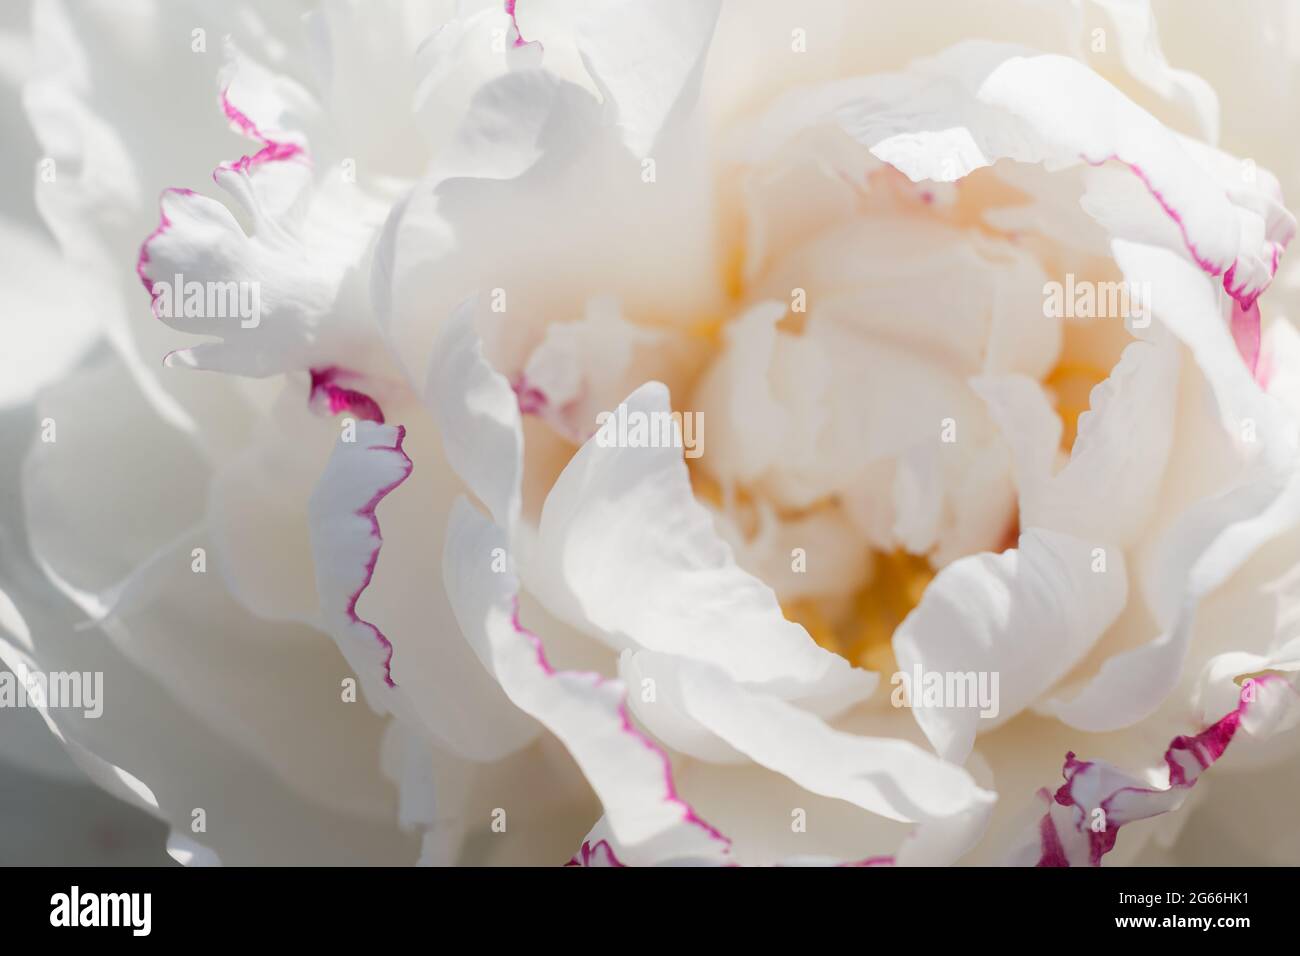 Fleur de pivoine blanche en gros plan. Magnifique fond floral naturel. Variétés de pivoines Festiva maxima pétales blancs à bordure rose Banque D'Images